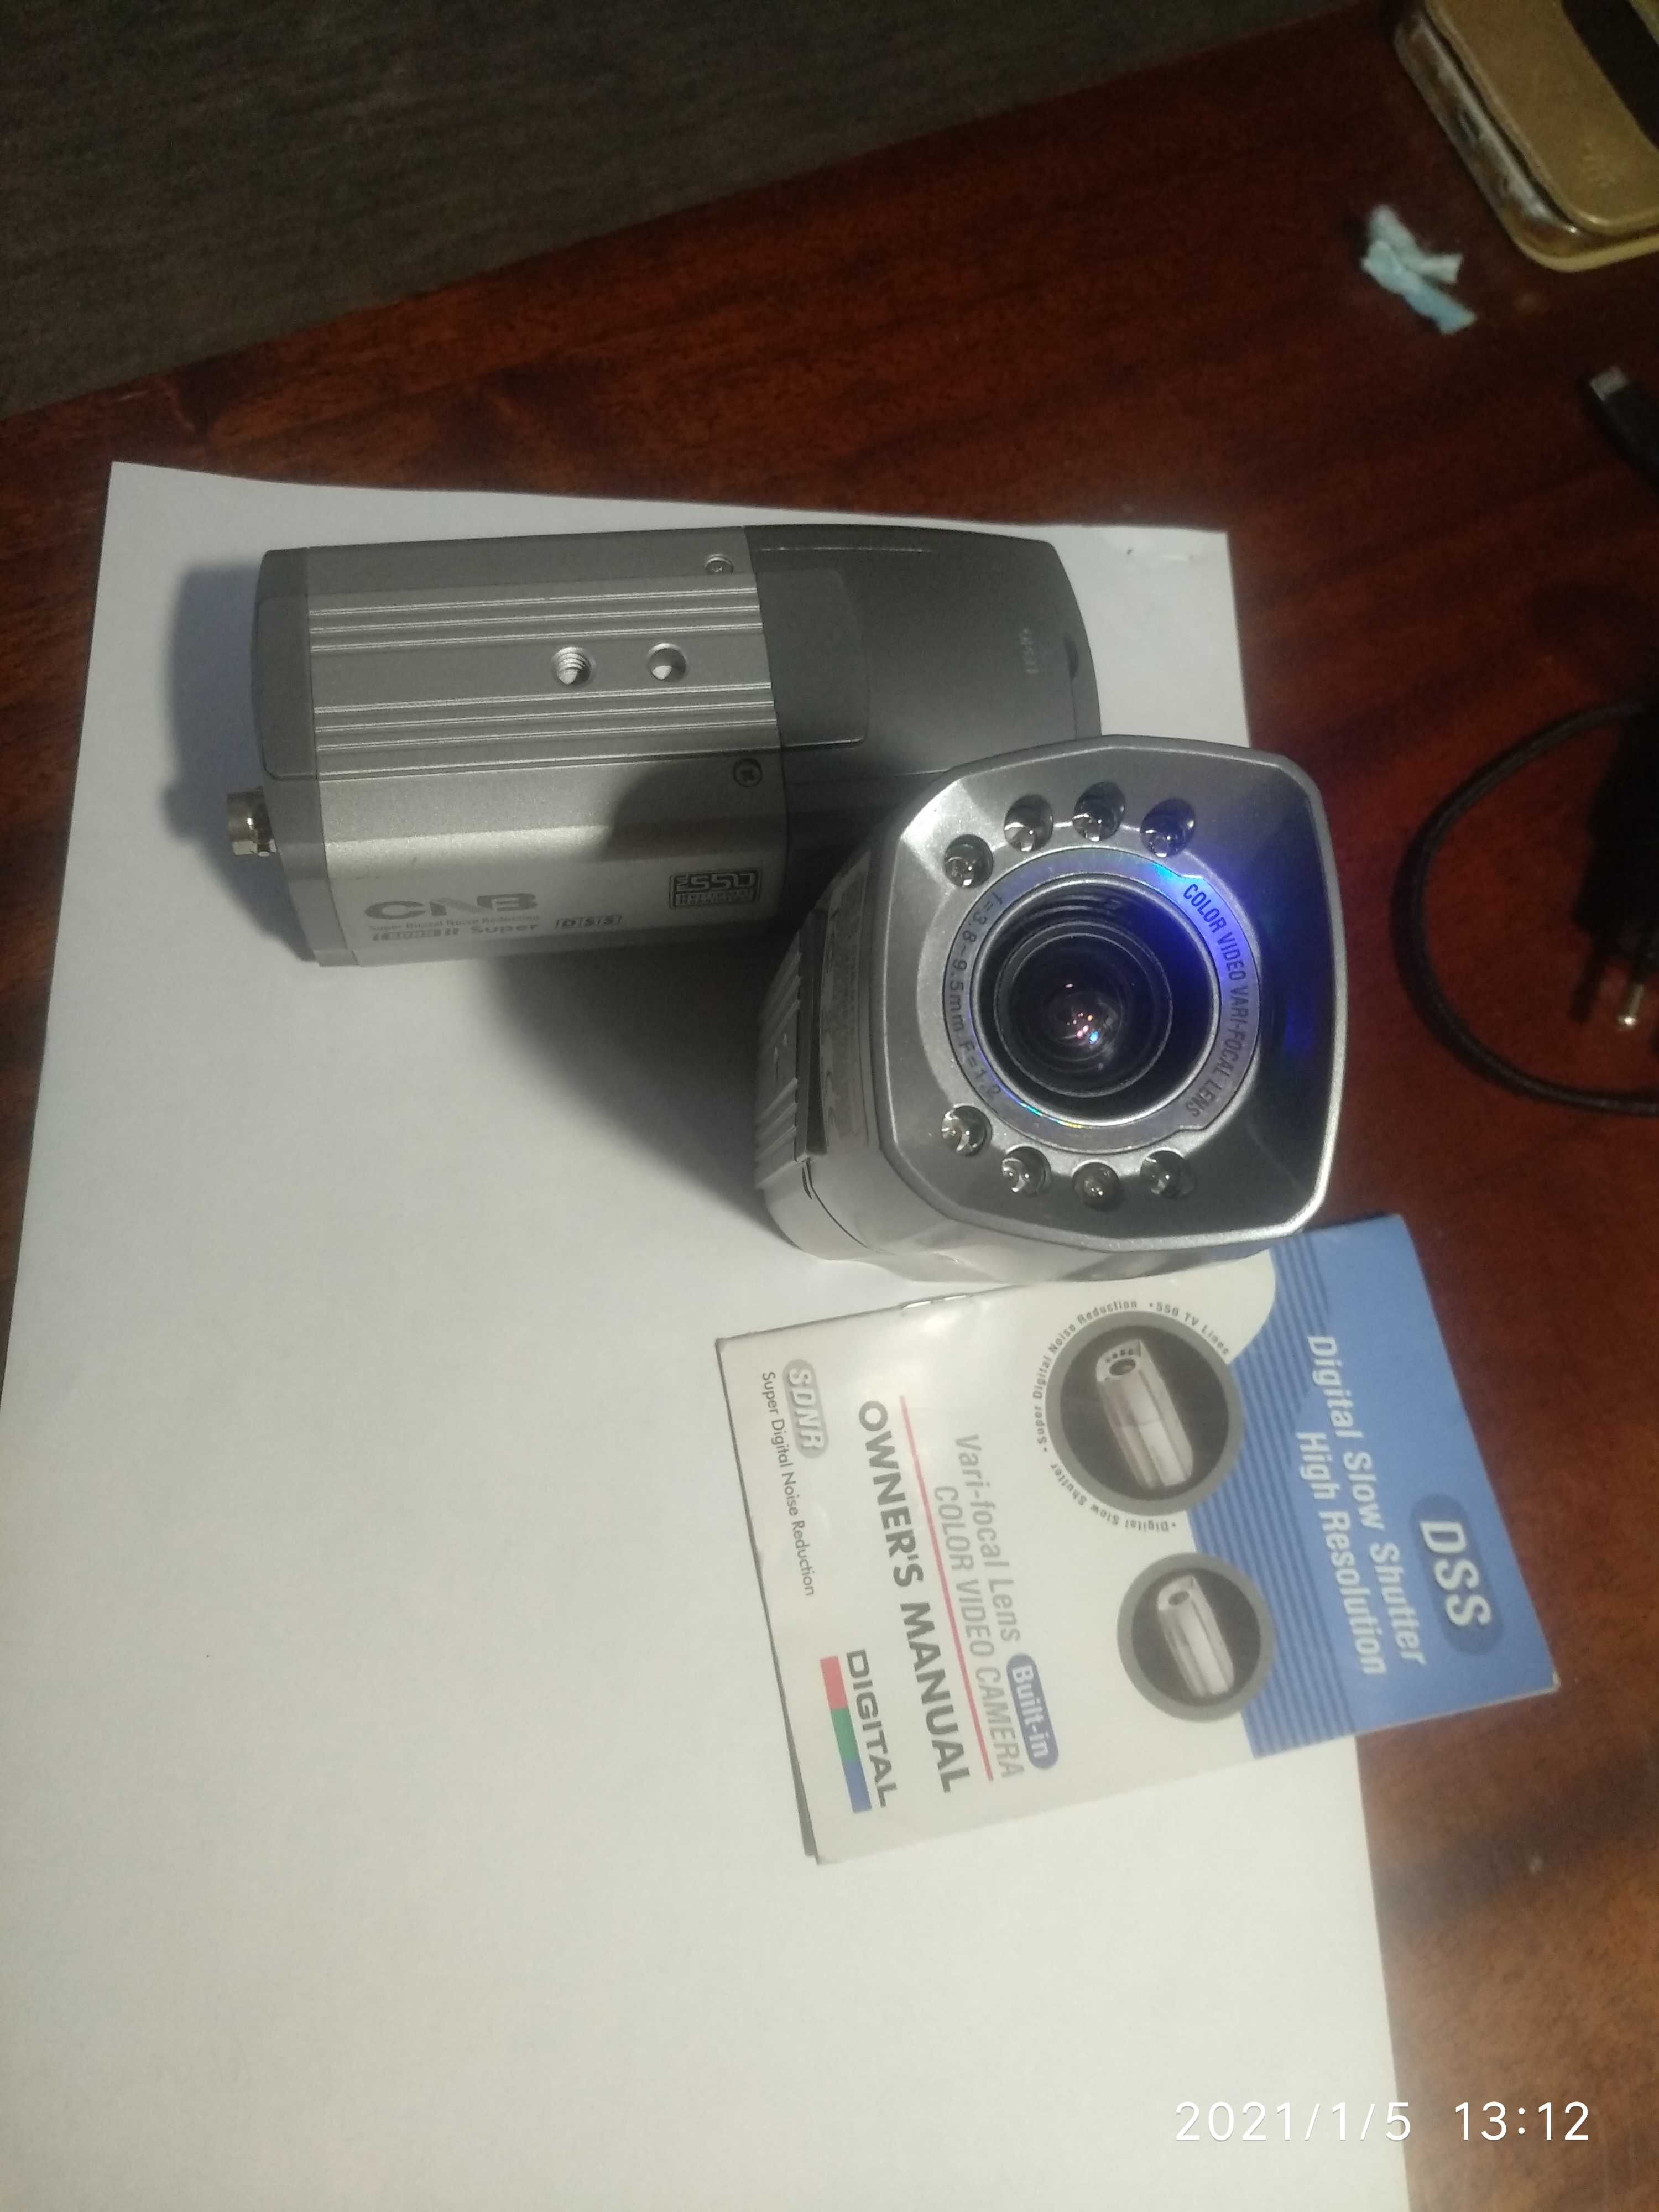 CNB-GP780IR видеокамеры наблюдения цветные